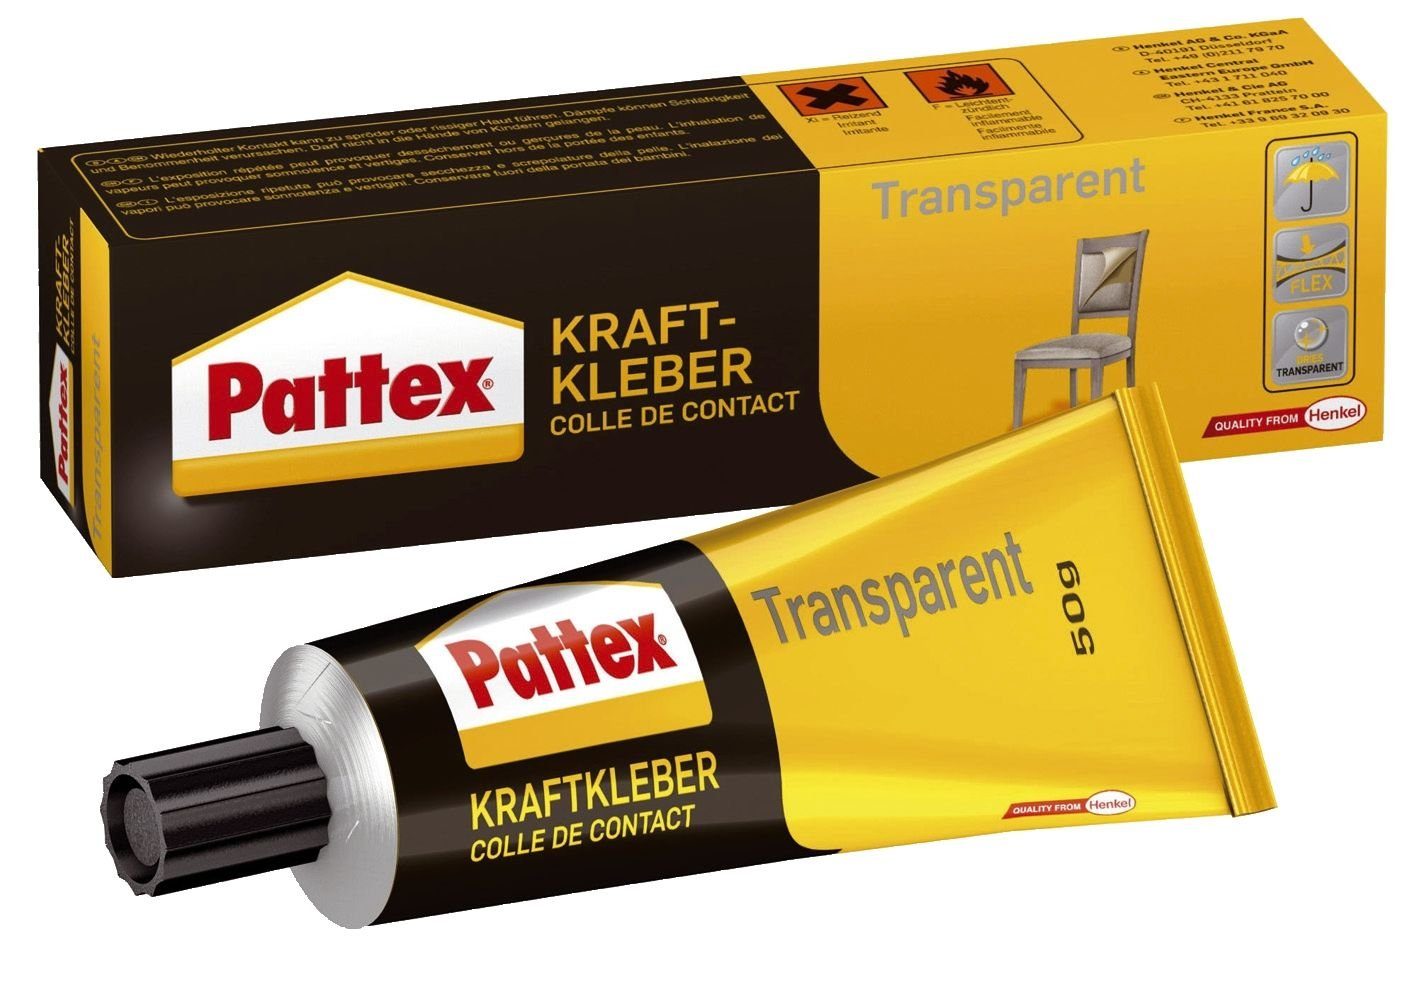 Pattex Handgelenkstütze Pattex Kraftkleber Transparent, Kontaktkleber, Tube 50g